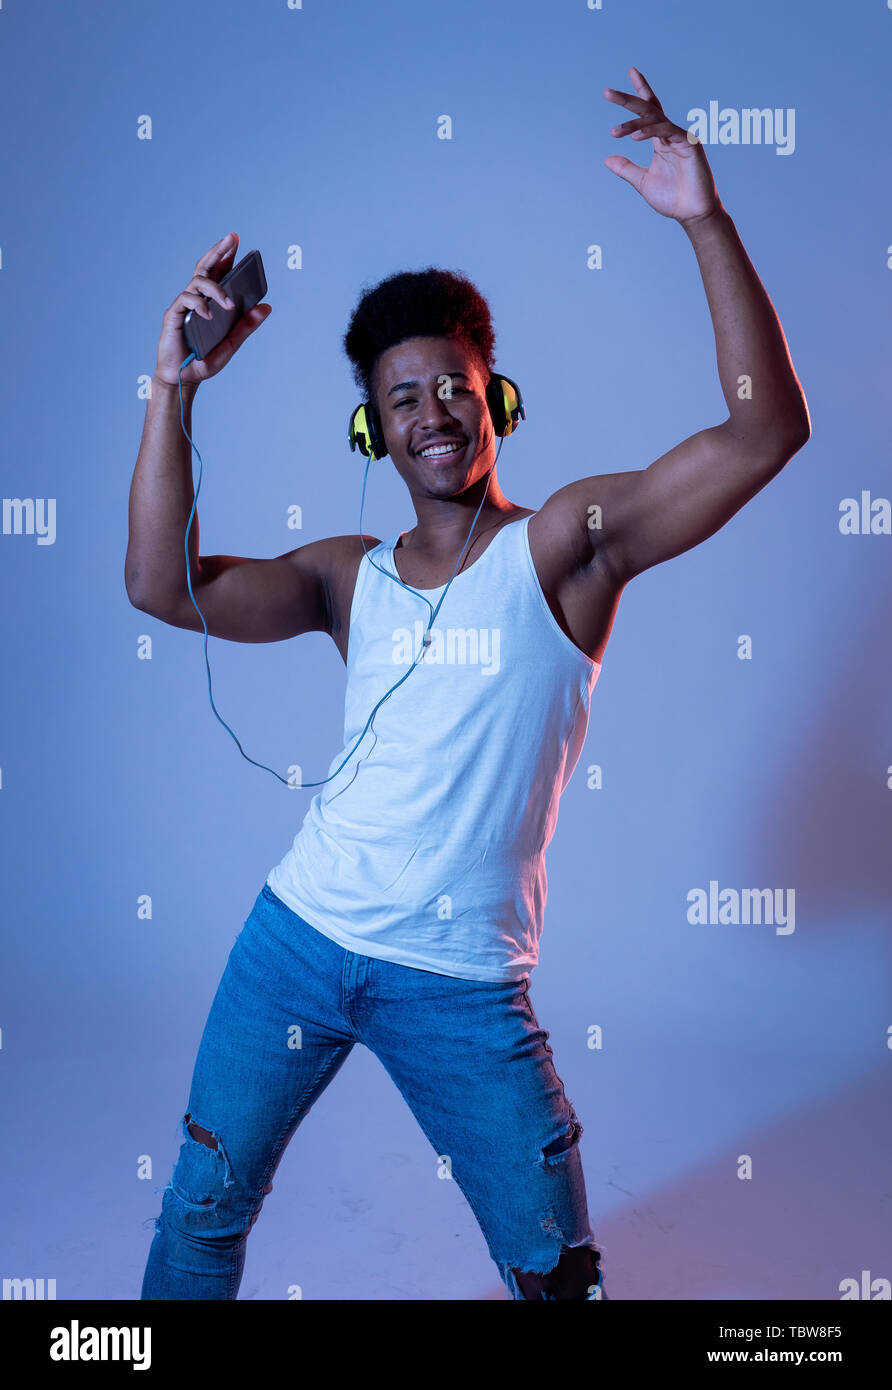 Forte americano africano giovane ballerino uomo ascoltare musica online ballare e cantare con le cuffie. Ritratto artistico con pista da ballo neon Foto Stock